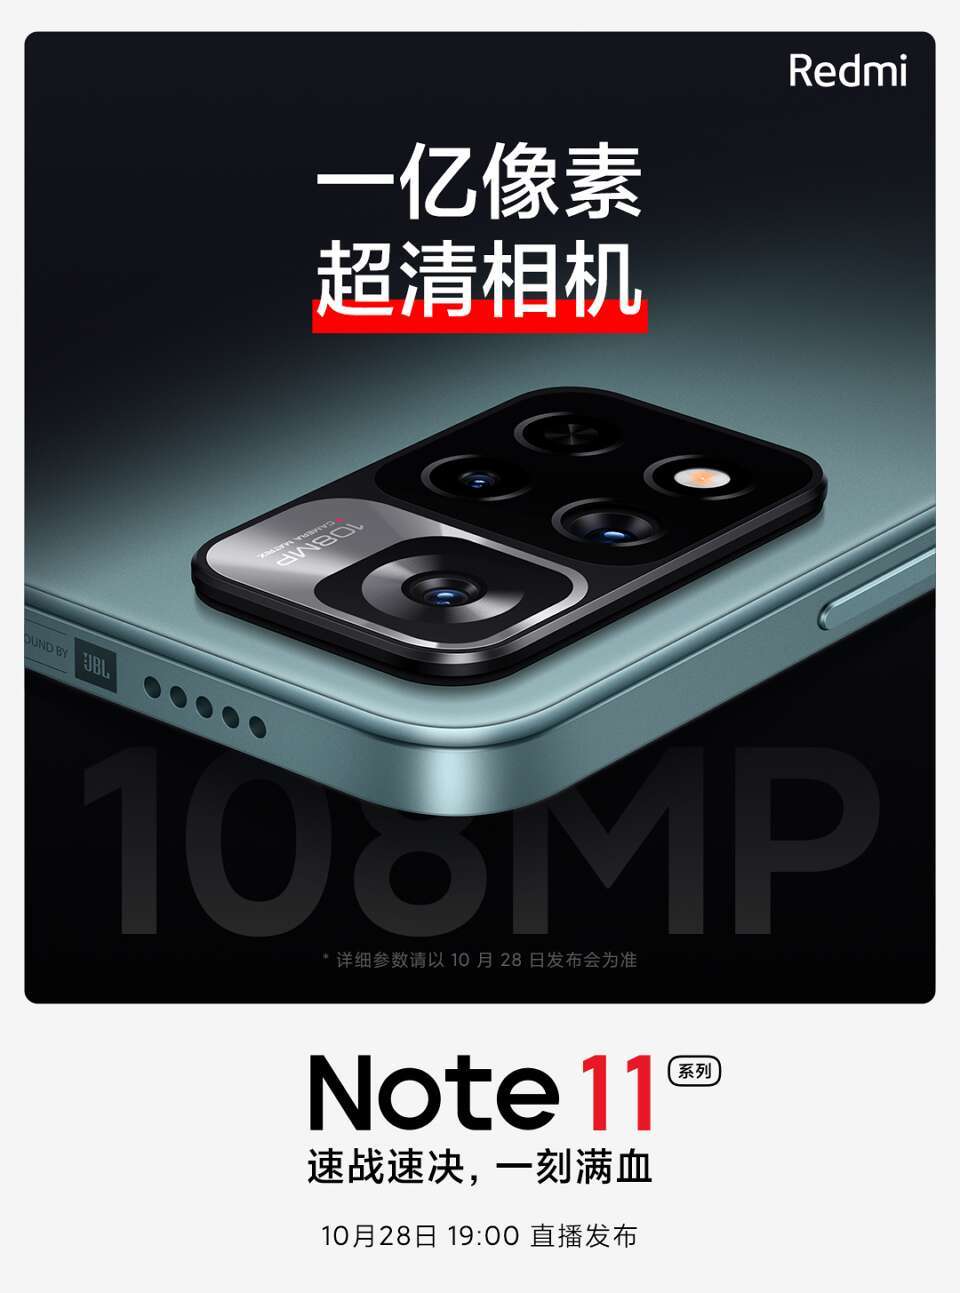 Kamera 108 MP Redmi Note 11